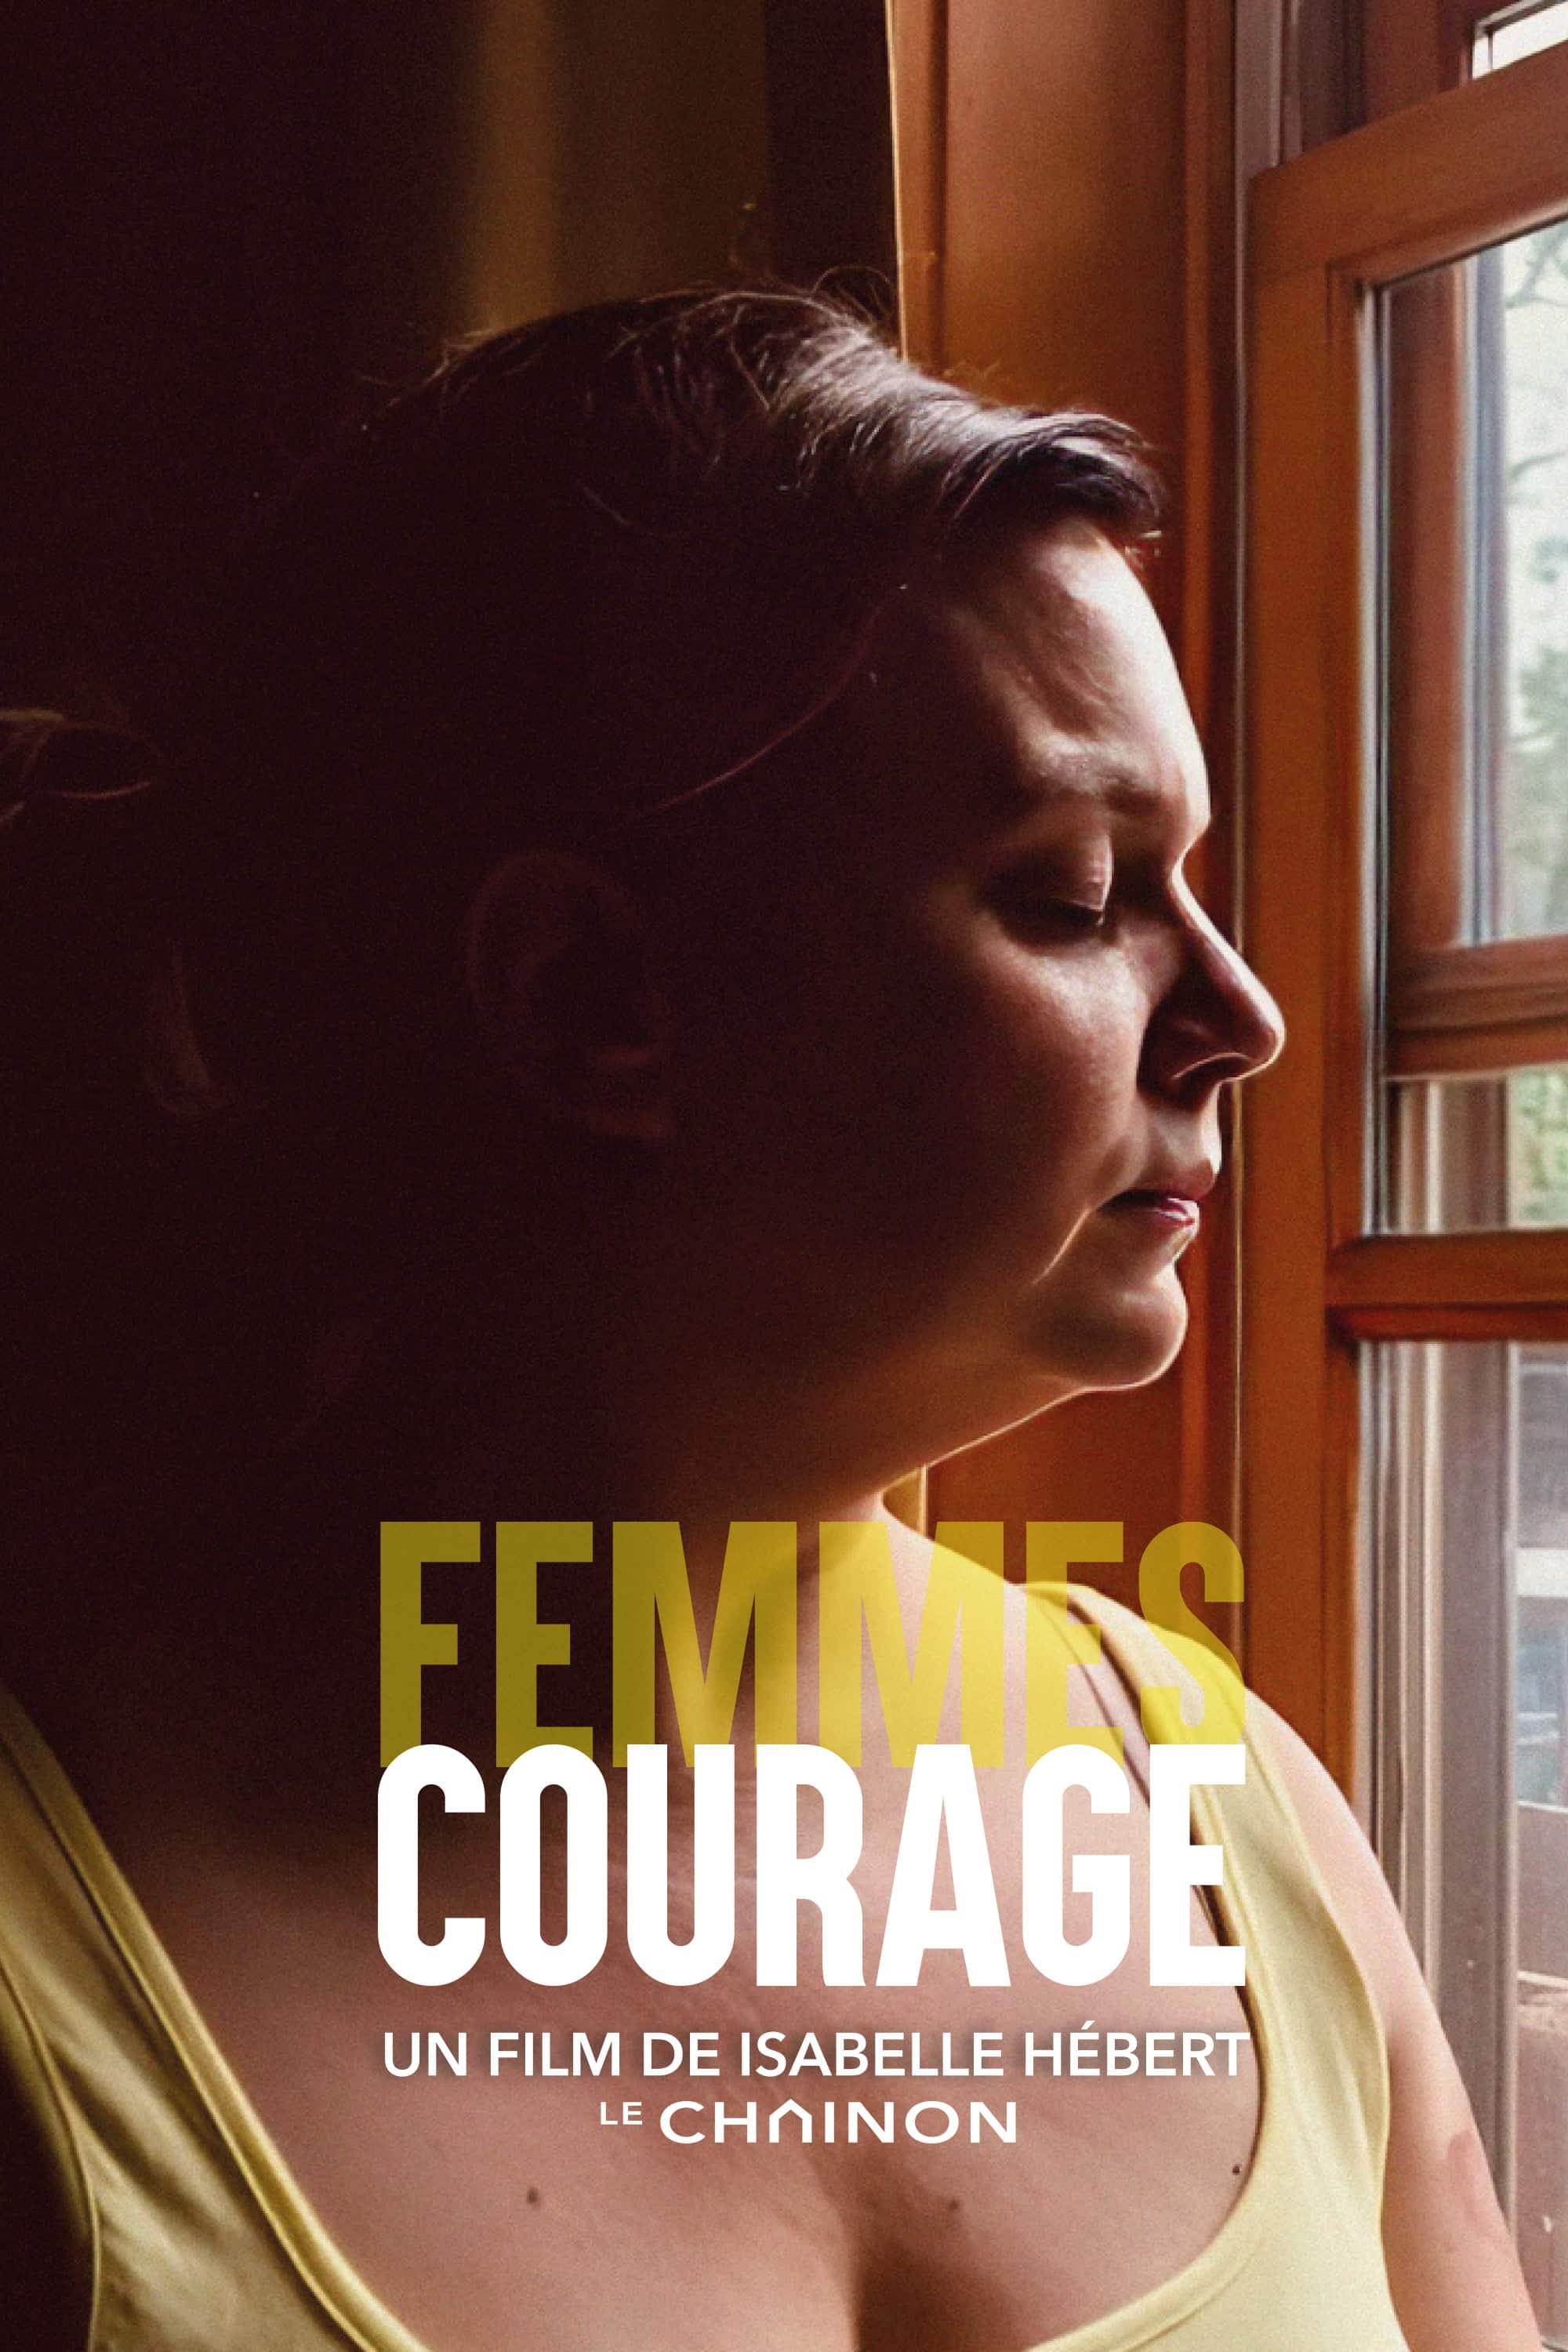 Femmes courage